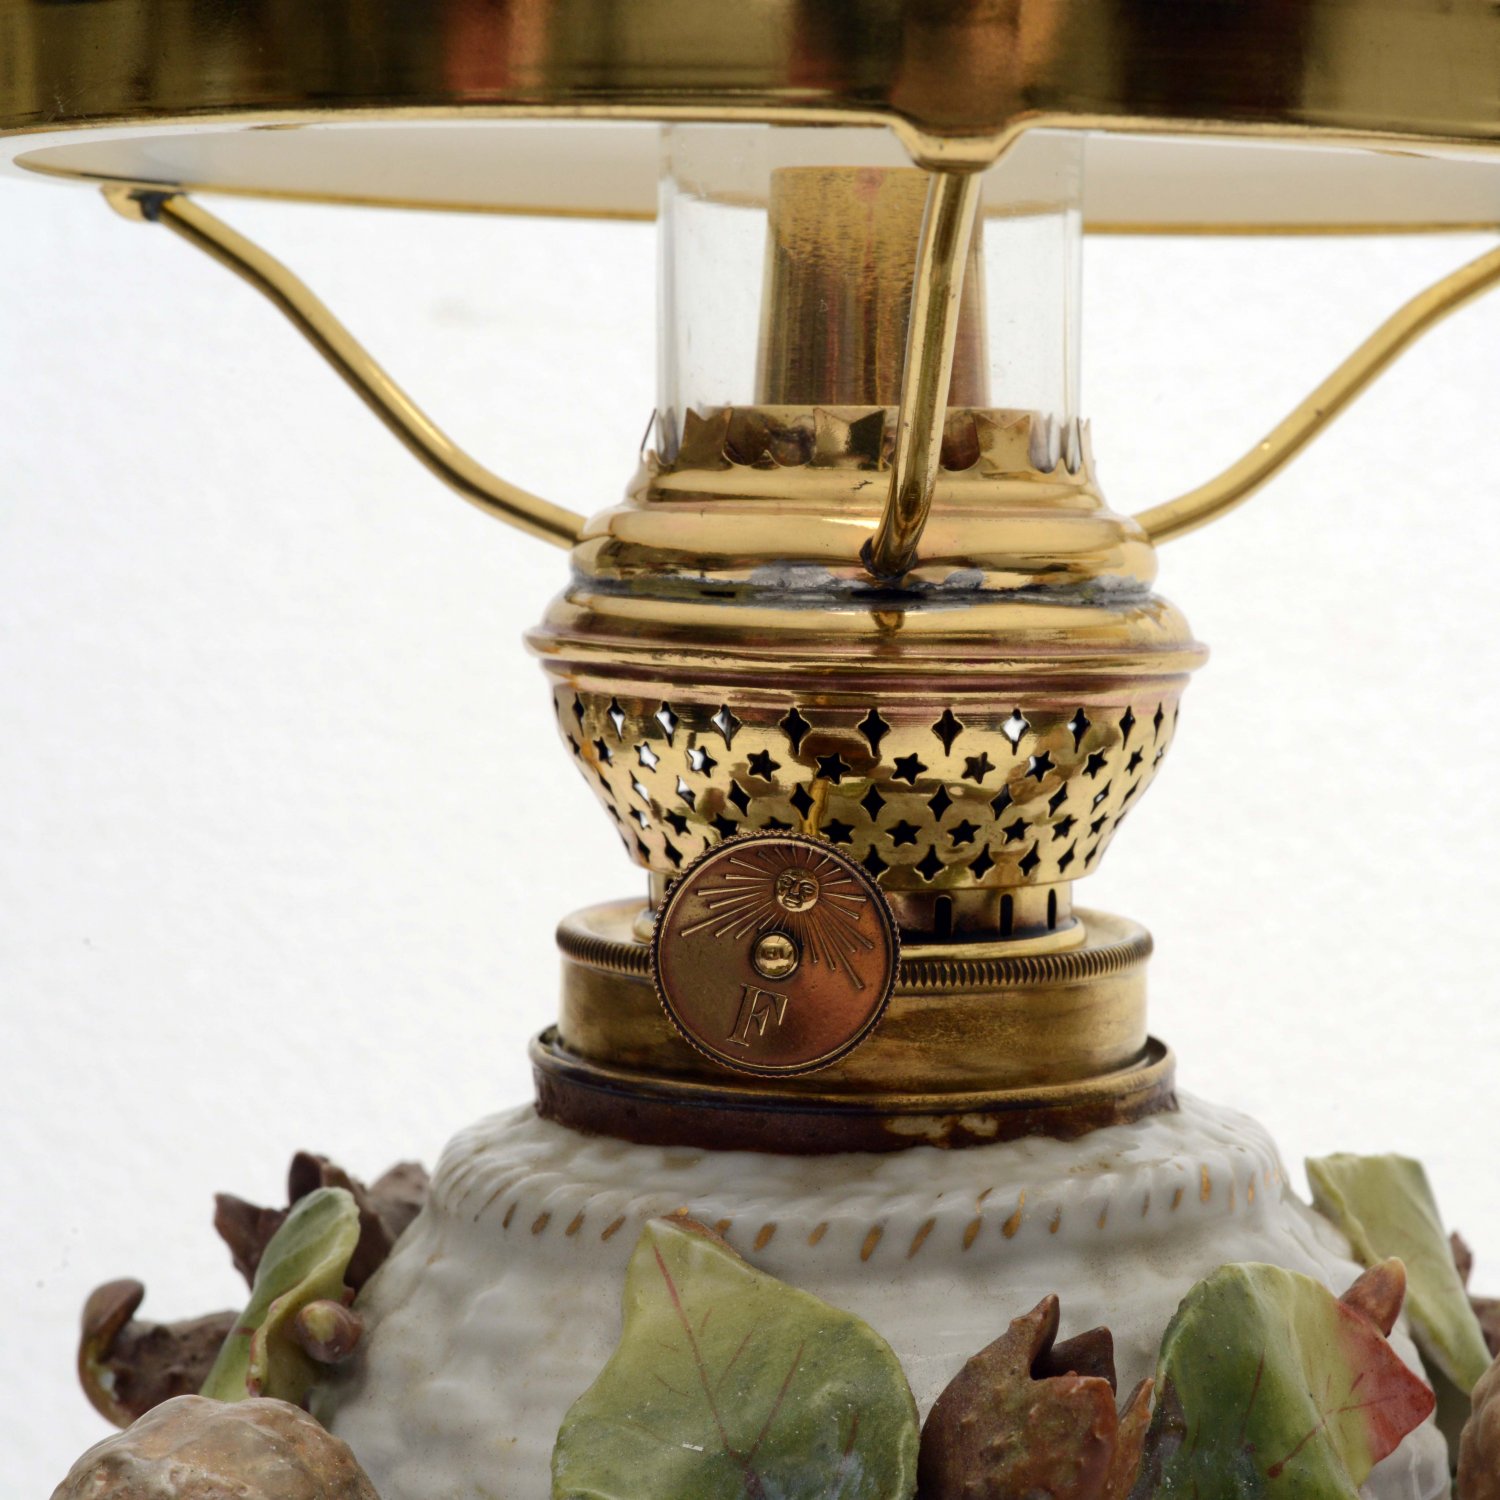 Von Schierholz's Fabulous Pair of Cherub Oil Lamps